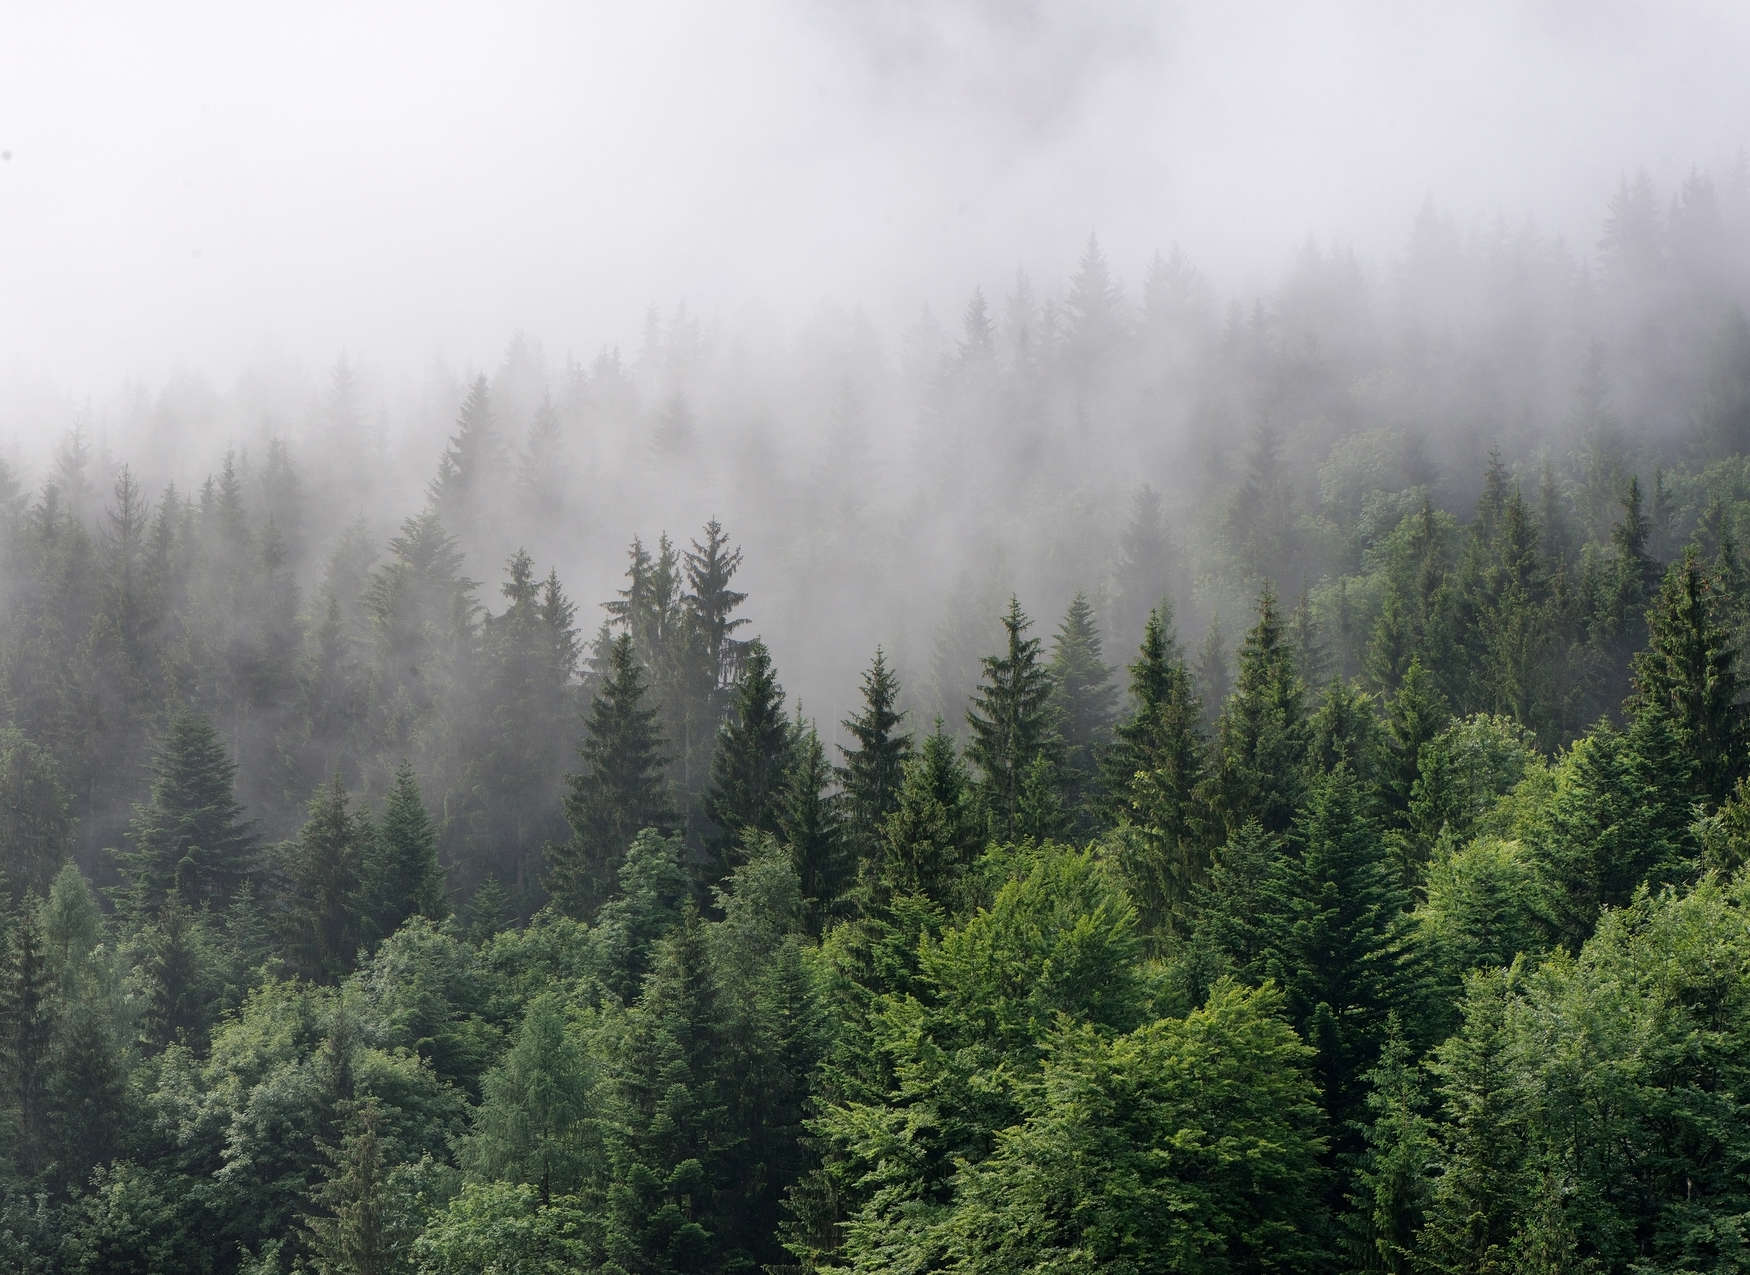             Foresta dall'alto in una giornata di nebbia - Verde, bianco
        